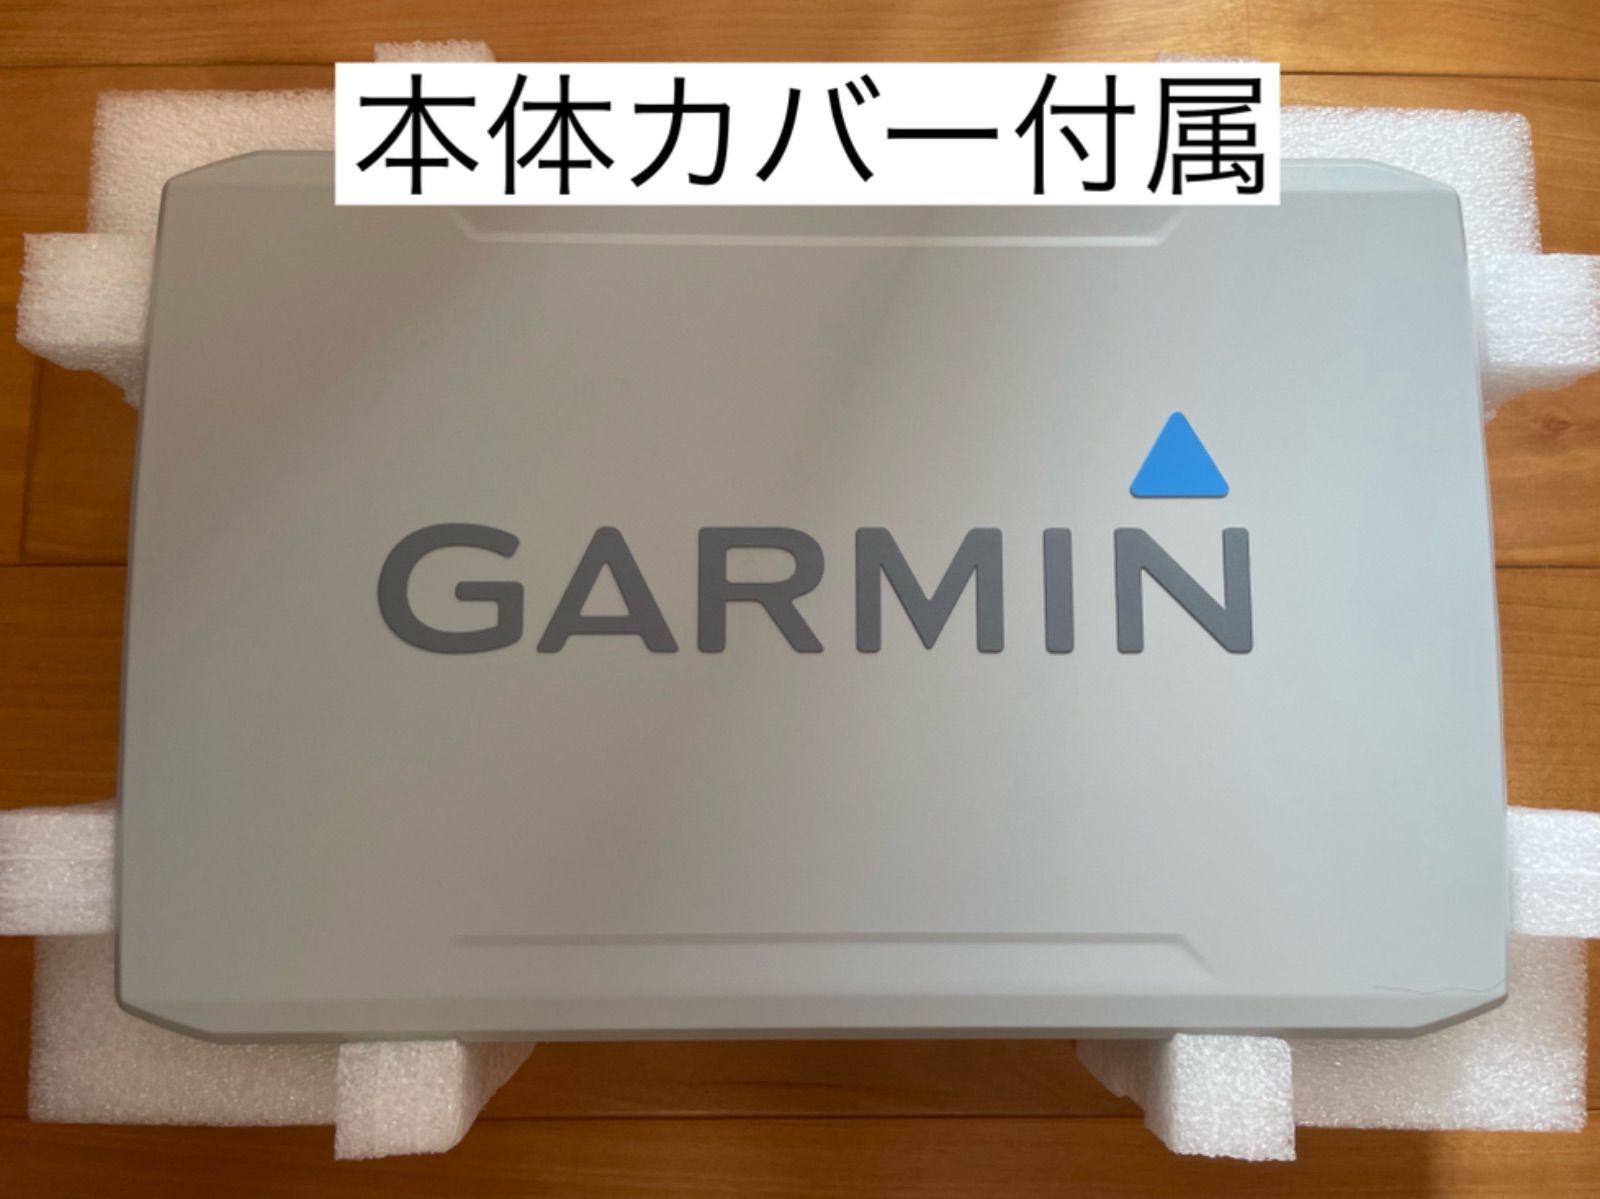 ガーミン エコマップウルトラ 10インチ+GT56UHDセット 日本語表示可能 ...